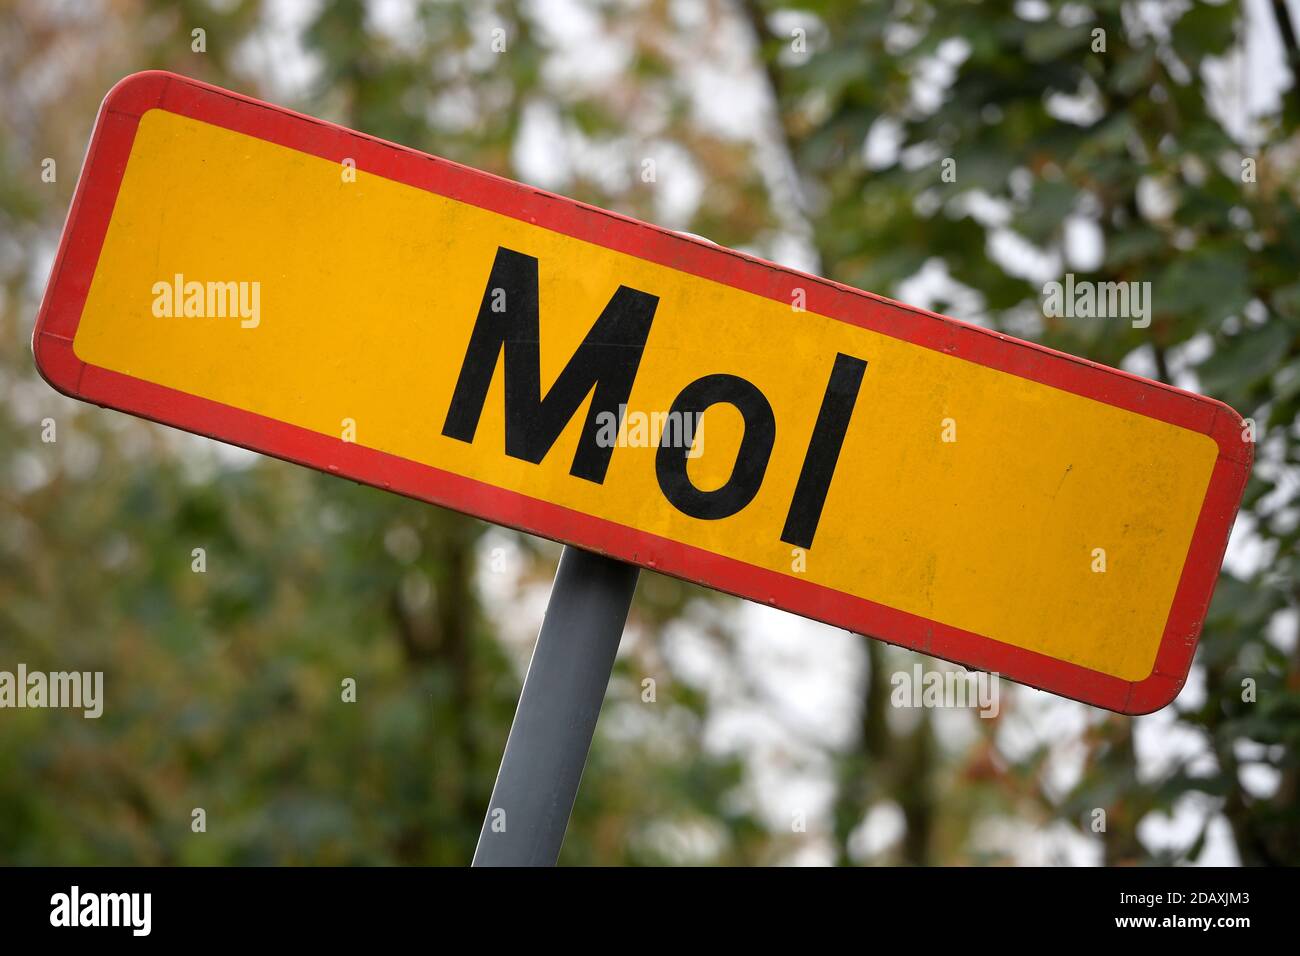 Abbildung zeigt den Namen der Gemeinde Mol auf einem Straßenschild, Freitag 21 September 2018. BELGA FOTO YORICK JANSENS Stockfoto